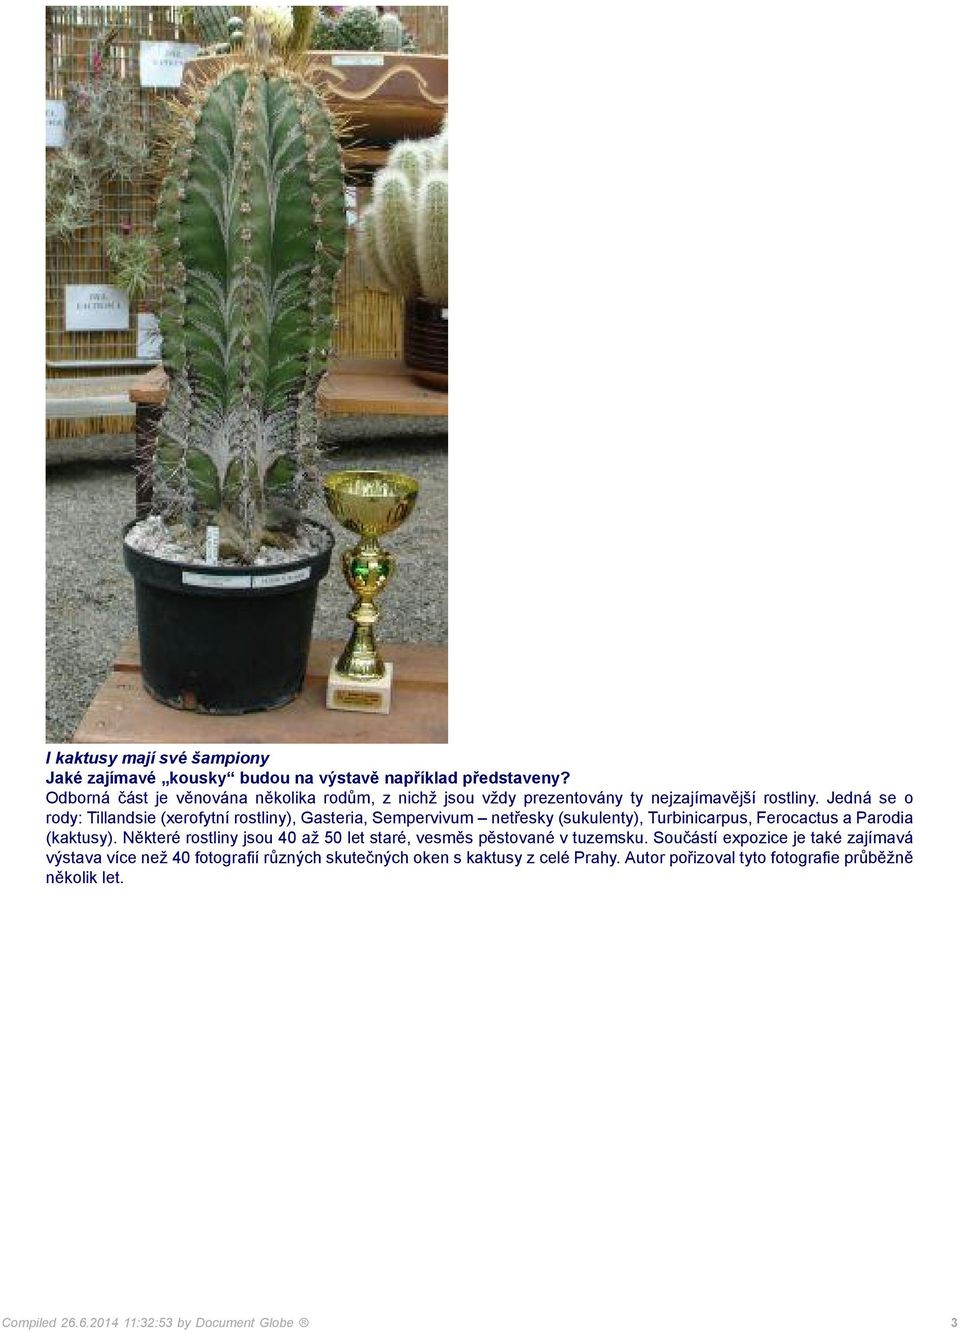 Jedná se o rody: Tillandsie (xerofytní rostliny), Gasteria, Sempervivum netřesky (sukulenty), Turbinicarpus, Ferocactus a Parodia (kaktusy).